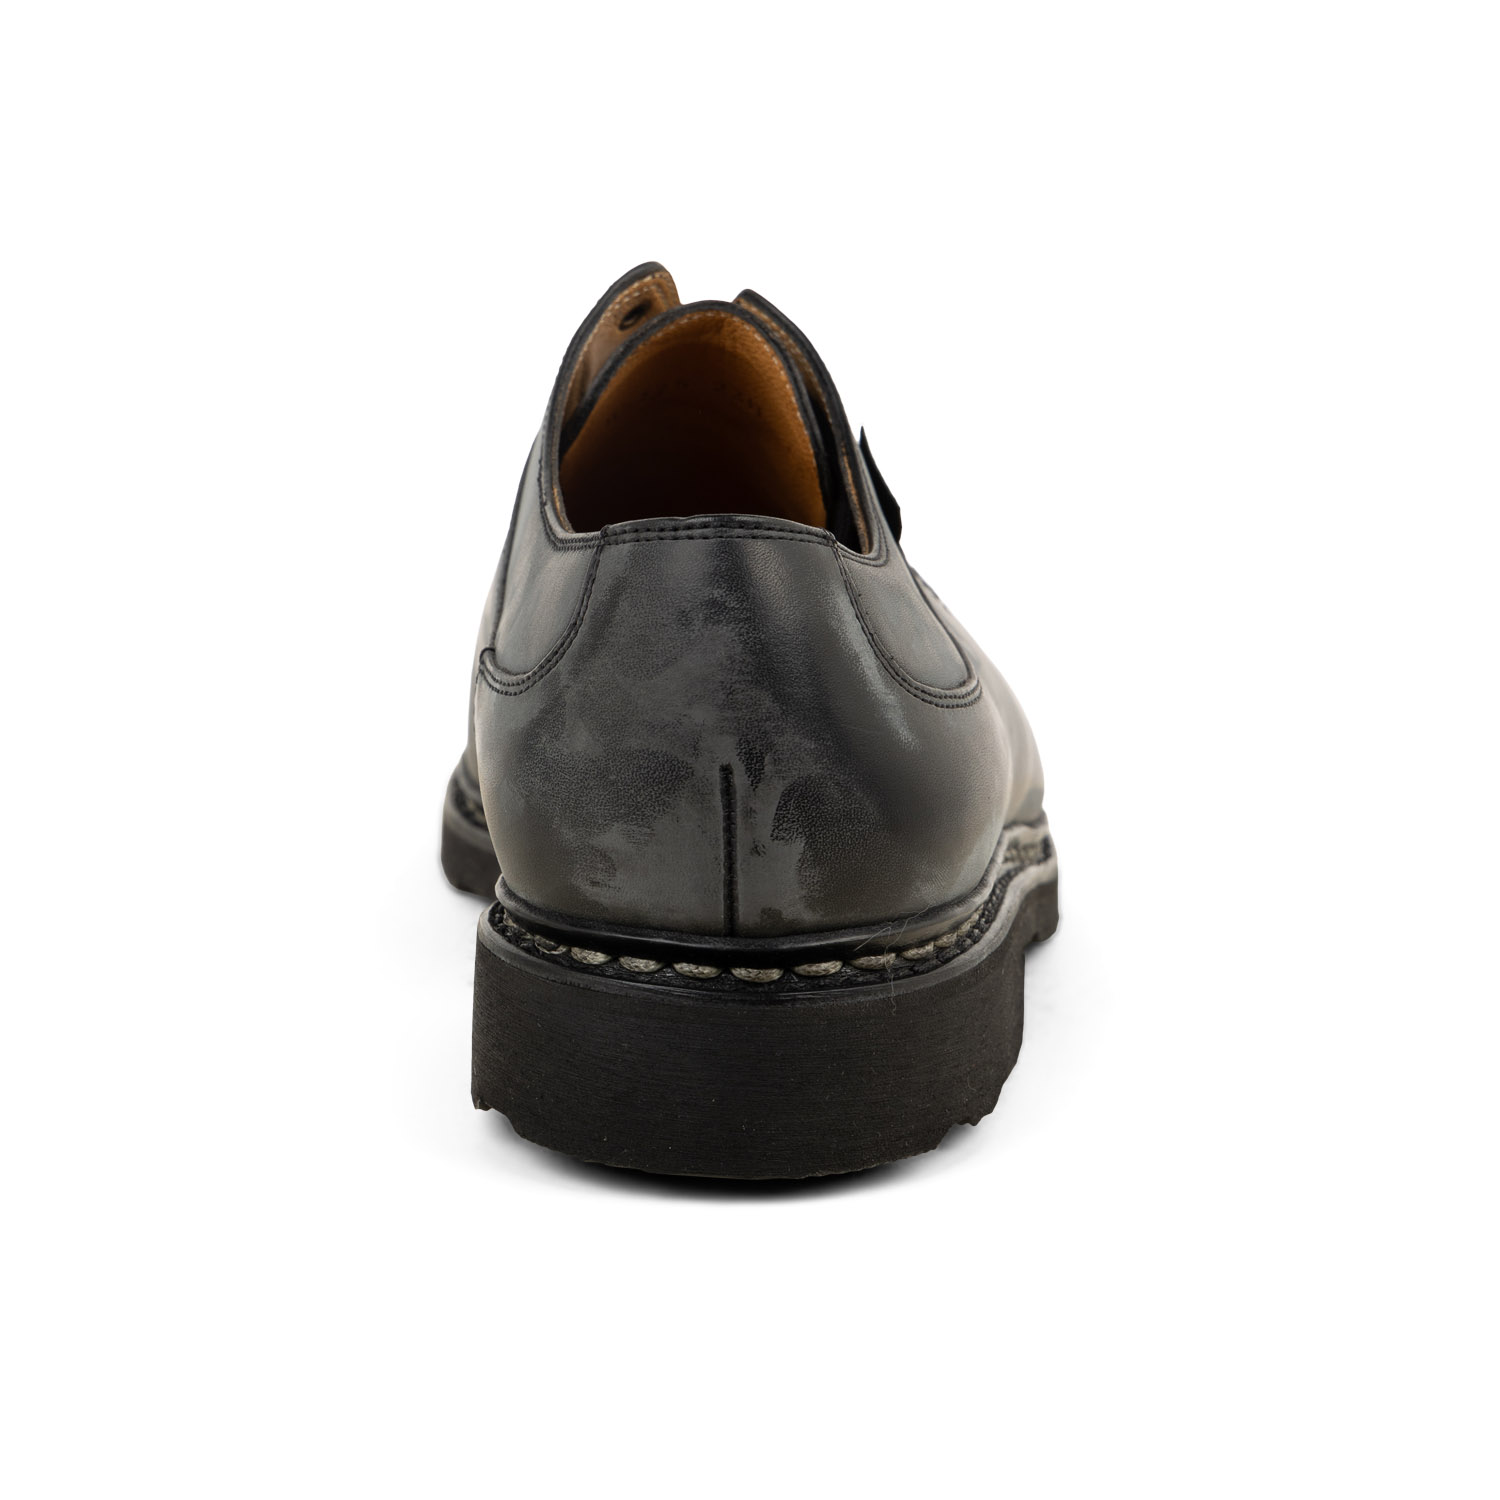 03 - AVIGNON - PARABOOT - Chaussures à lacets - Cuir